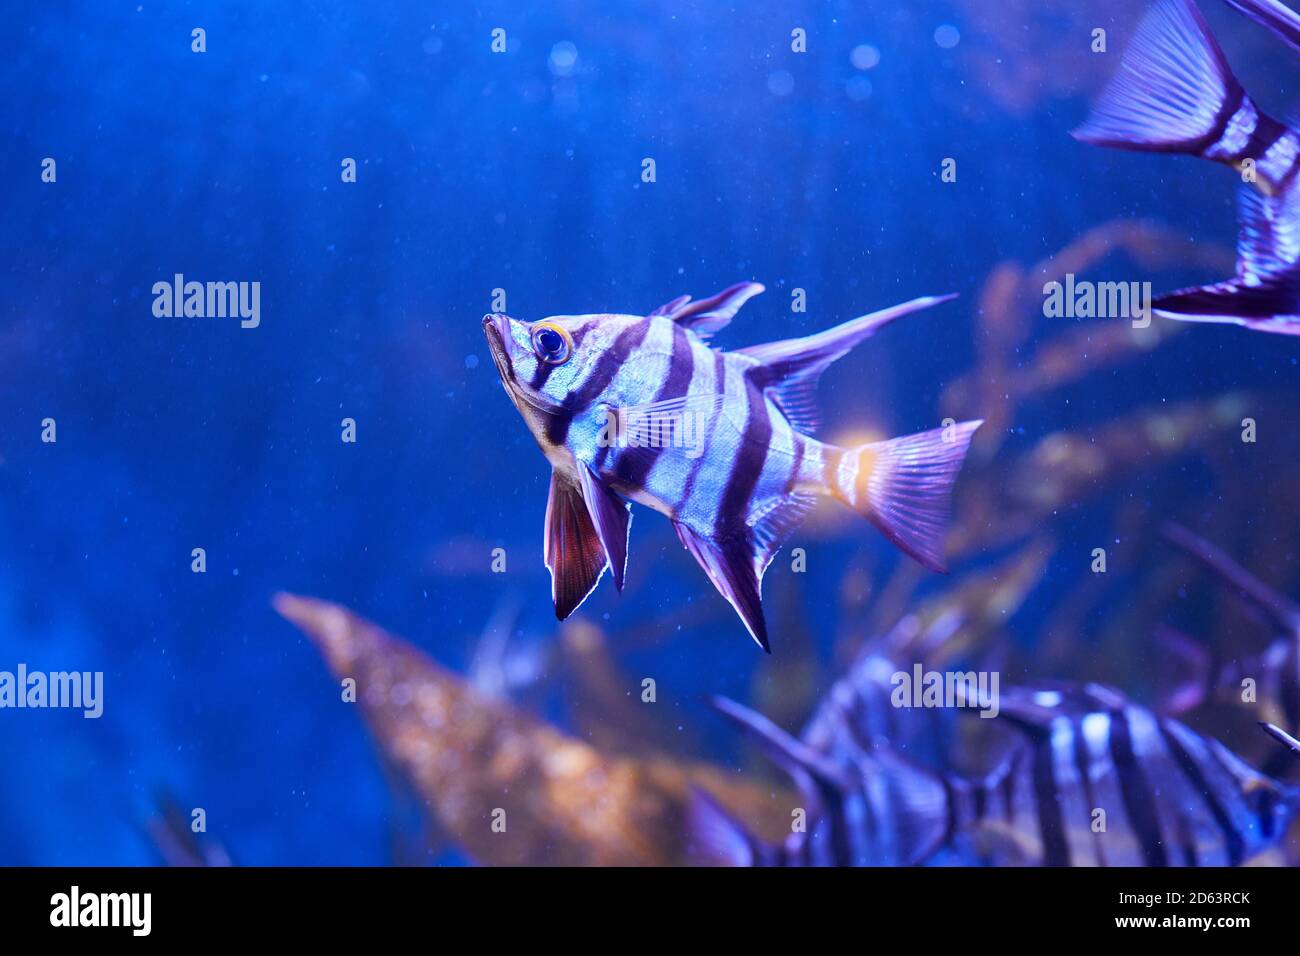 Vecchia moglie (Enoplosus armatus) Un pesce a strisce bianche e nere con una piccola testa e pinne lunghe sulla parte superiore nuotare in acquario Foto Stock